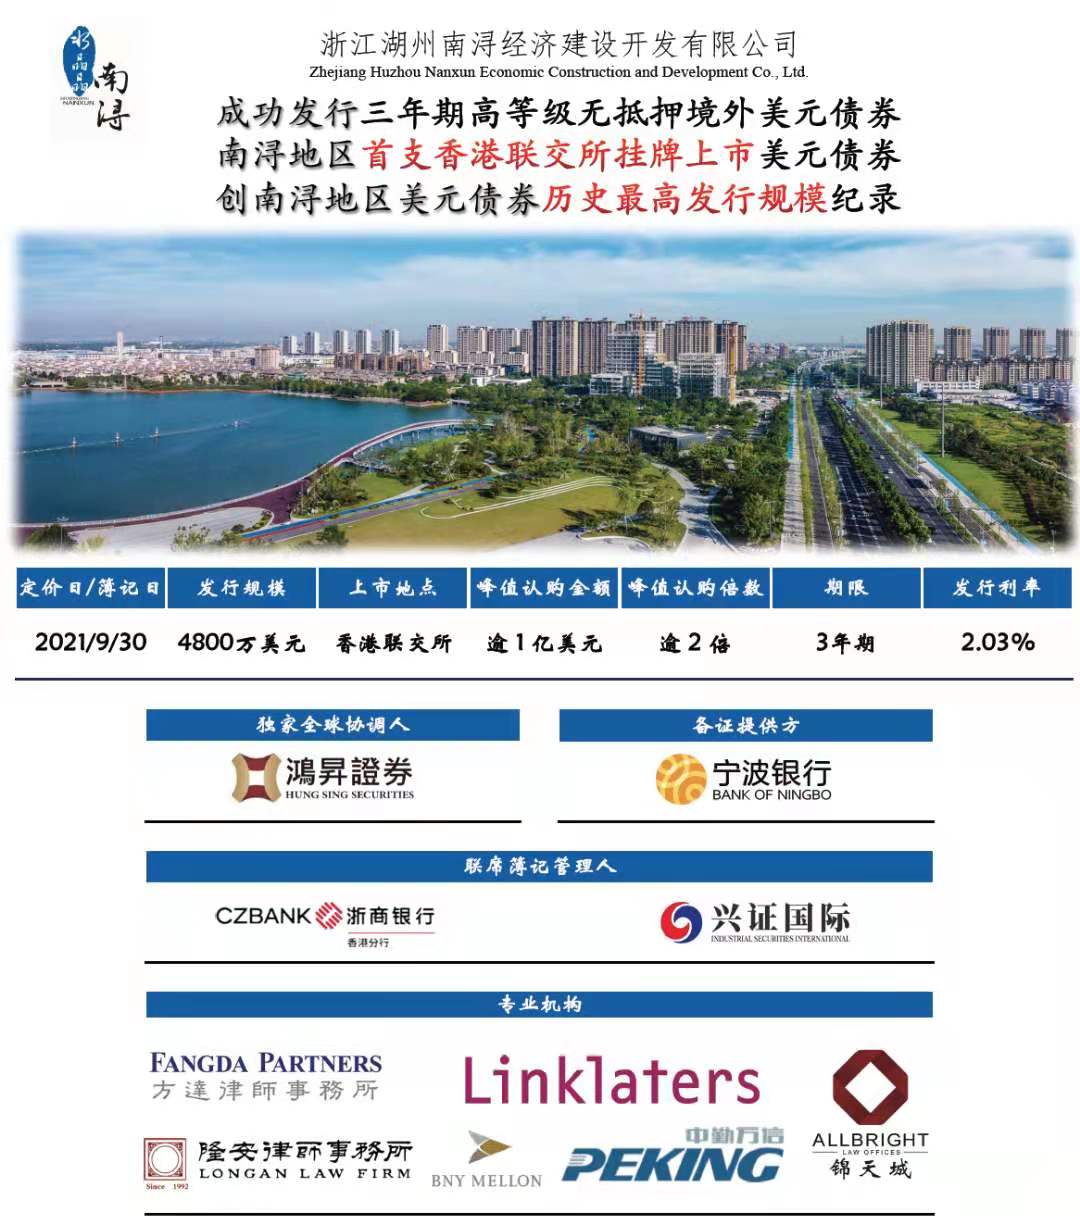 2021 - 浙江湖州南浔经济建设开发有限公司 - 独家全球协调人